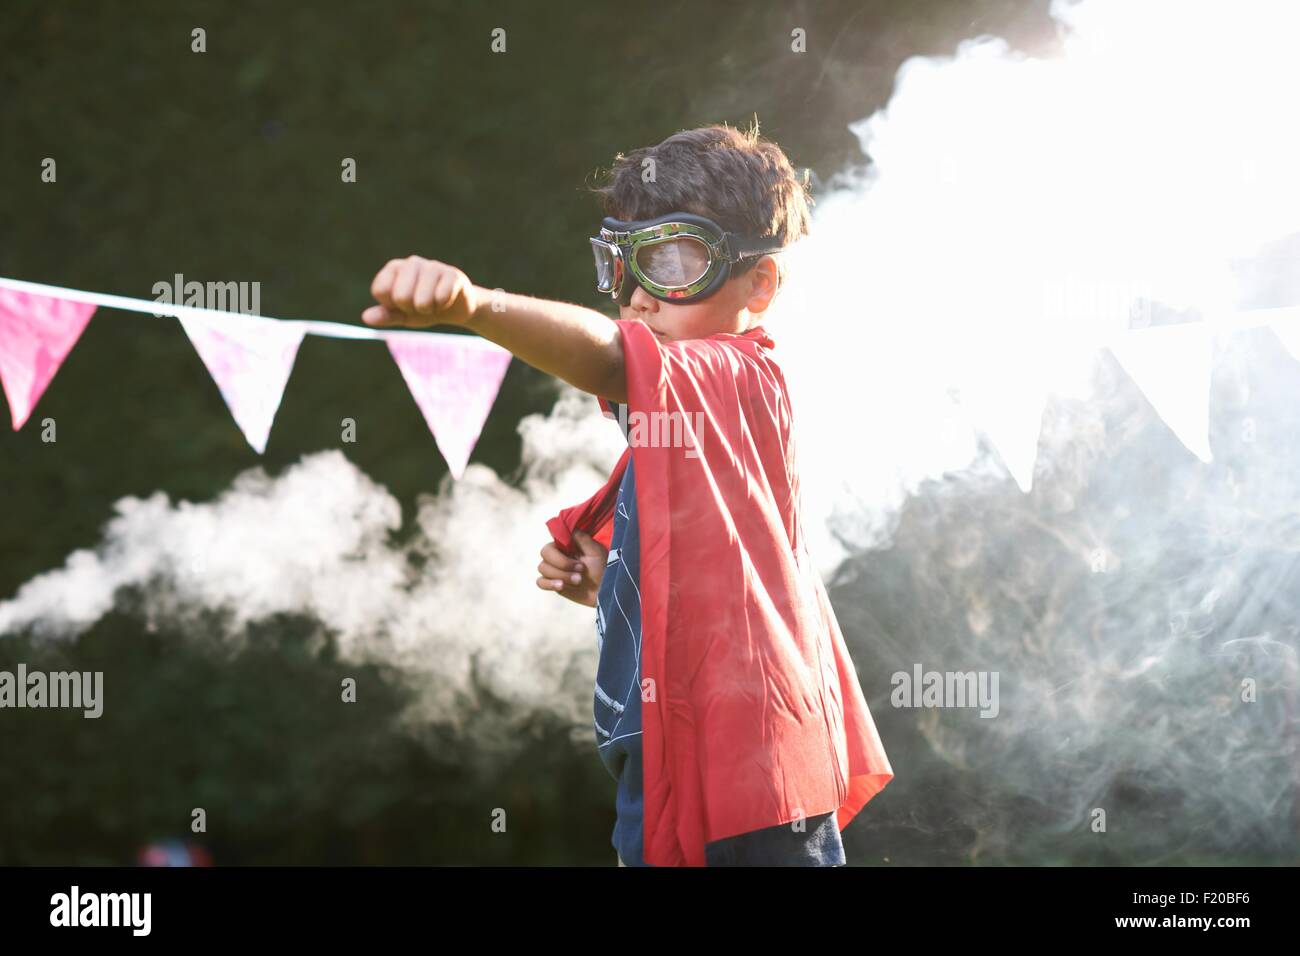 Chico gafas protectoras y cabo en superhéroe postura frente de nube de humo Foto de stock